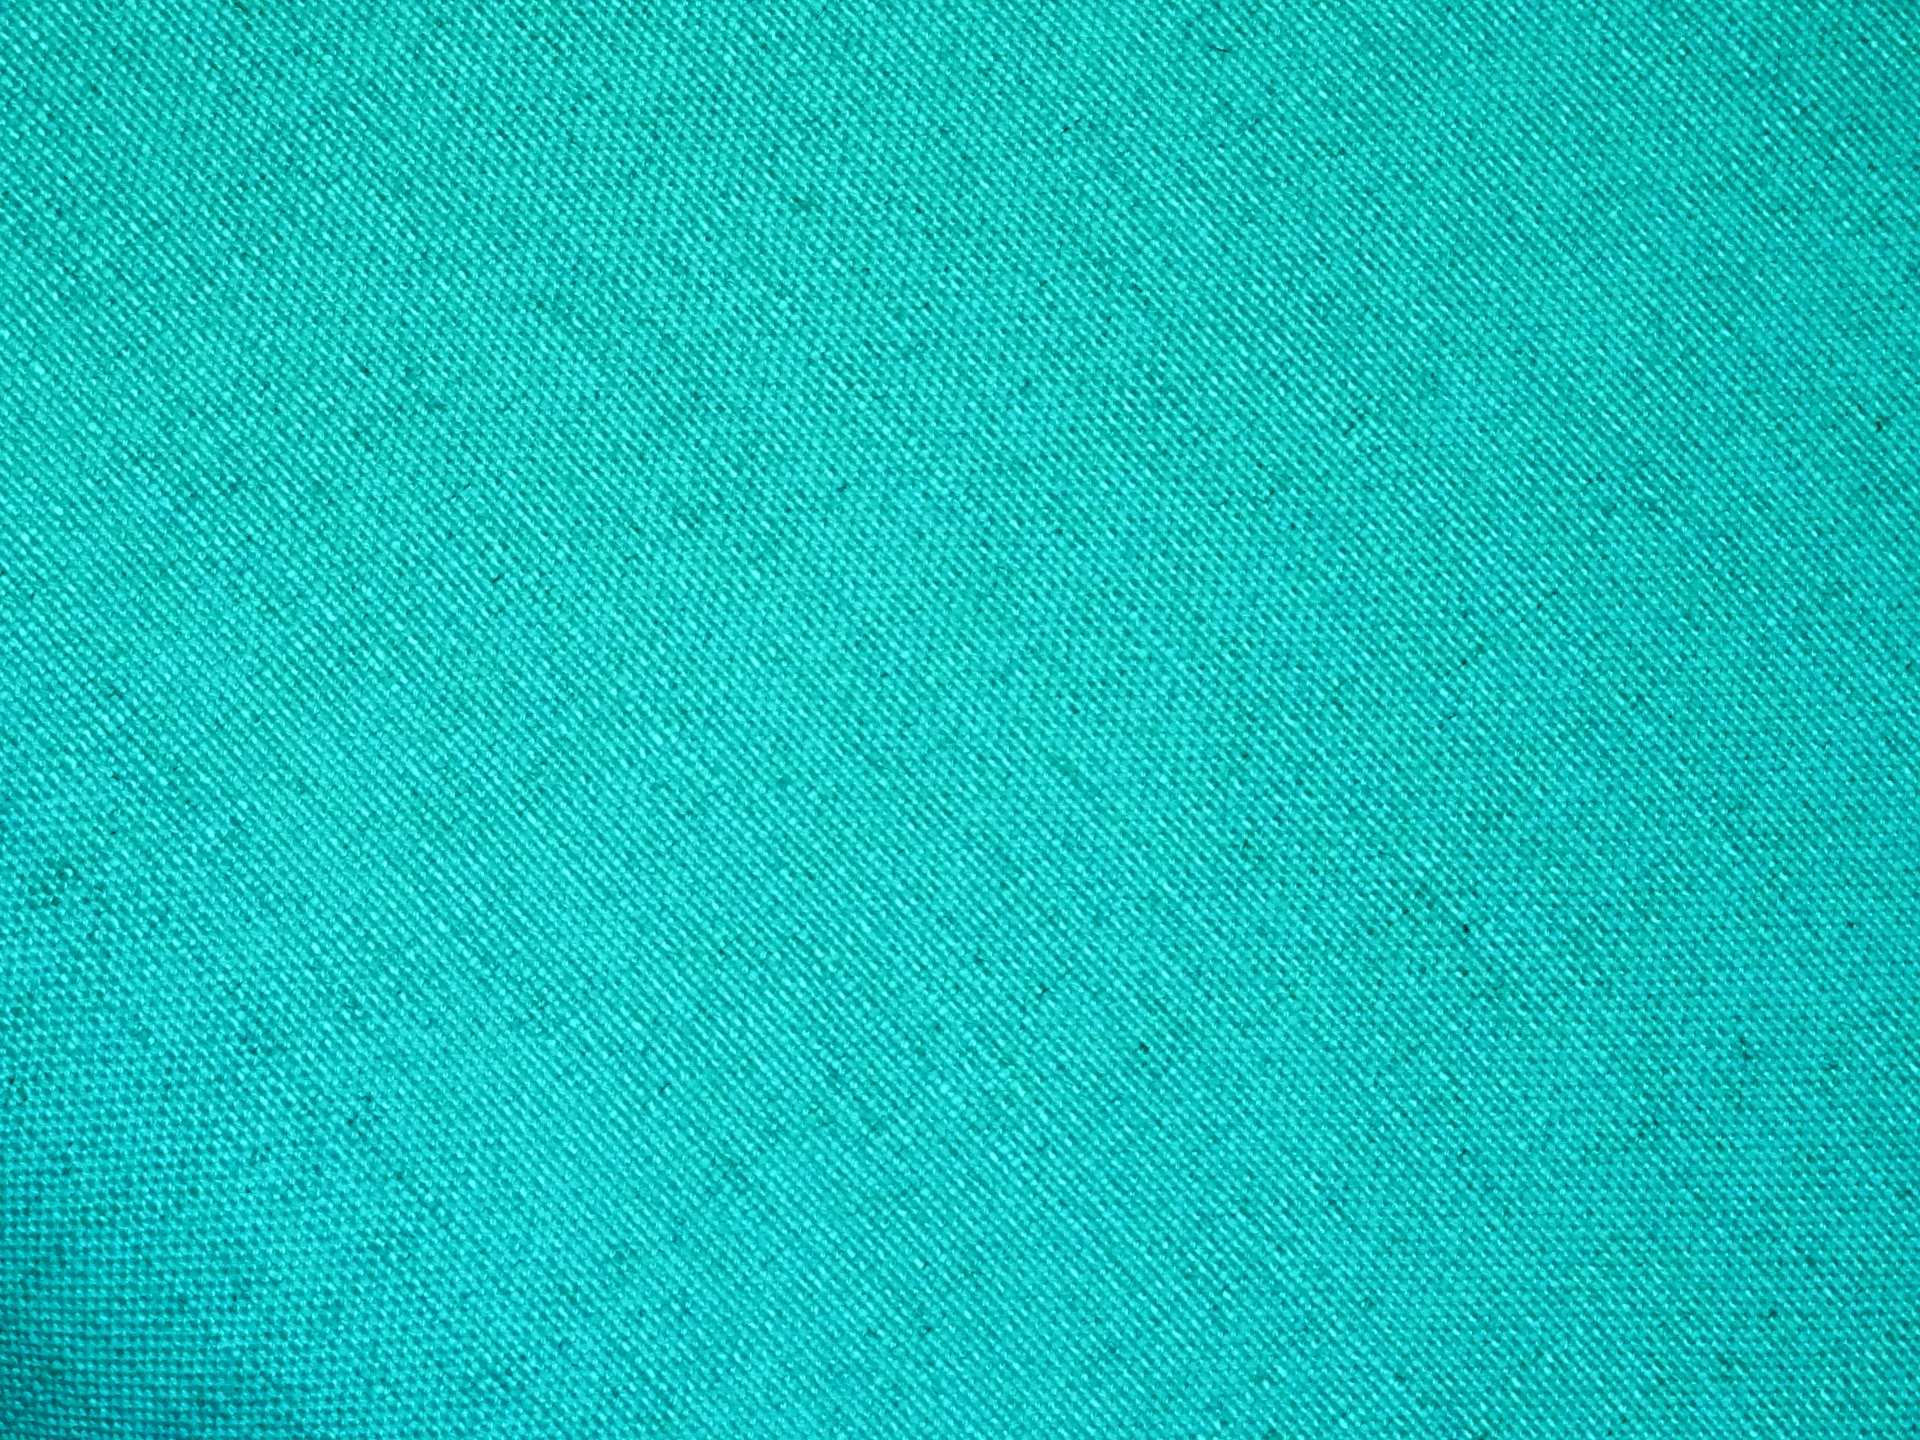 Turquoise pytloviny Fabric Background